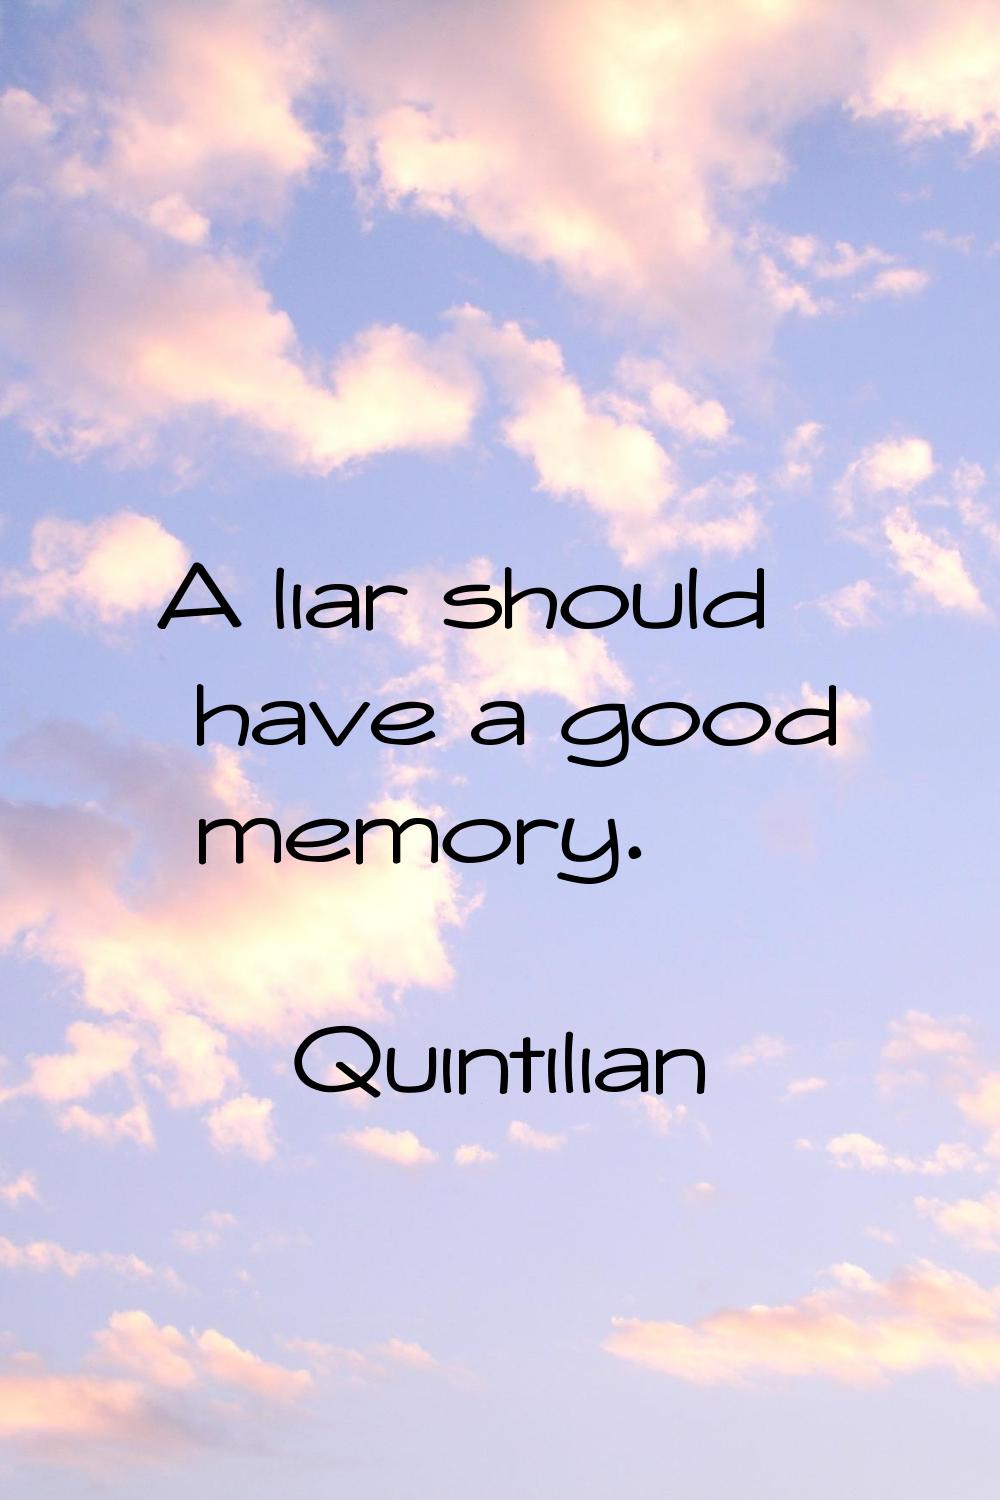 A liar should have a good memory.